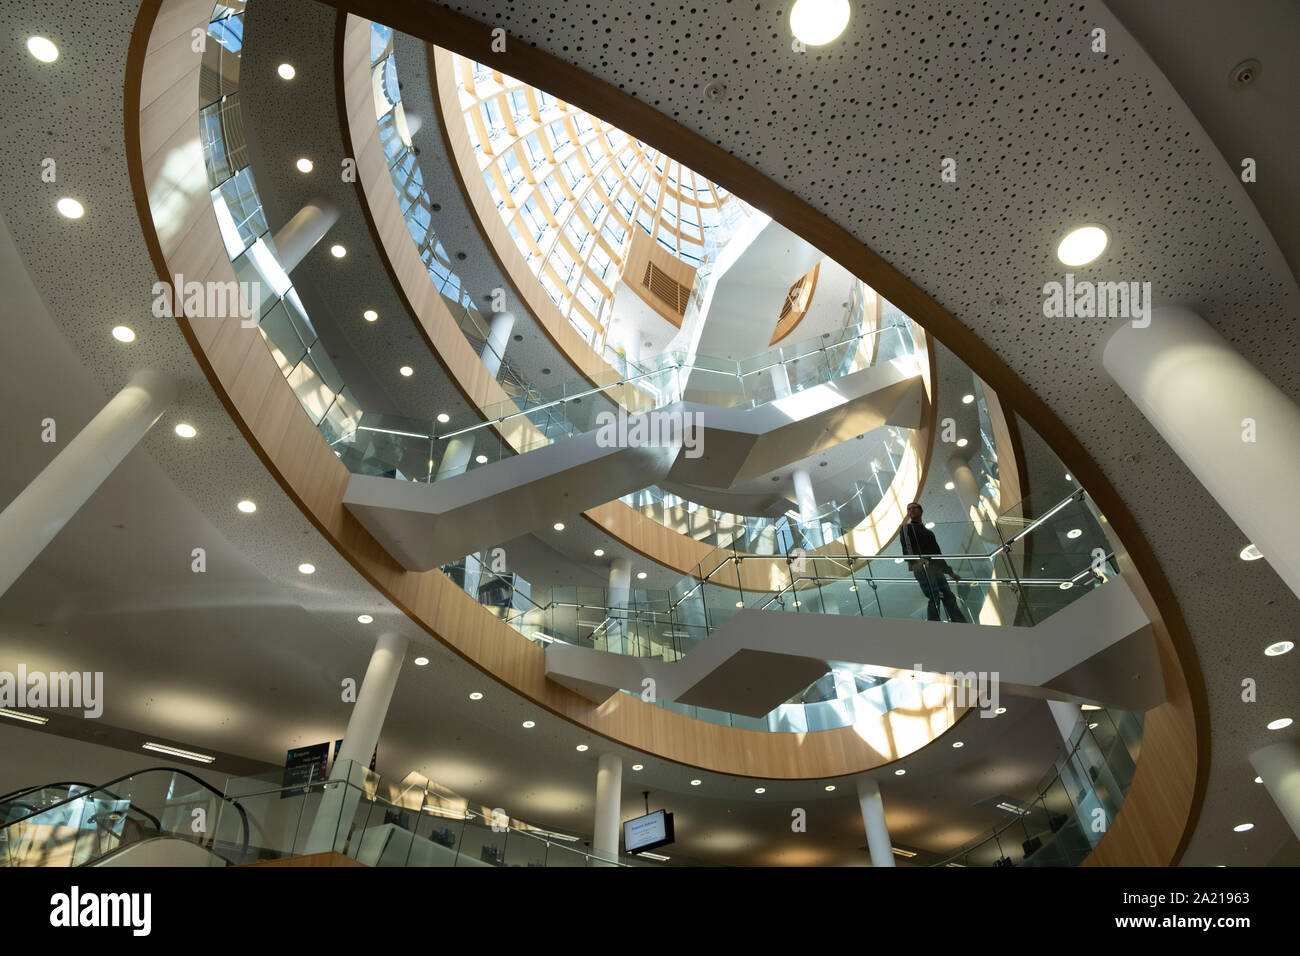 Liverpool Central Library, Liverpool, Regno Unito - sovrapposizione di scale in vetro e acciaio, una straordinaria architettura moderna dietro una facciata classica Foto Stock